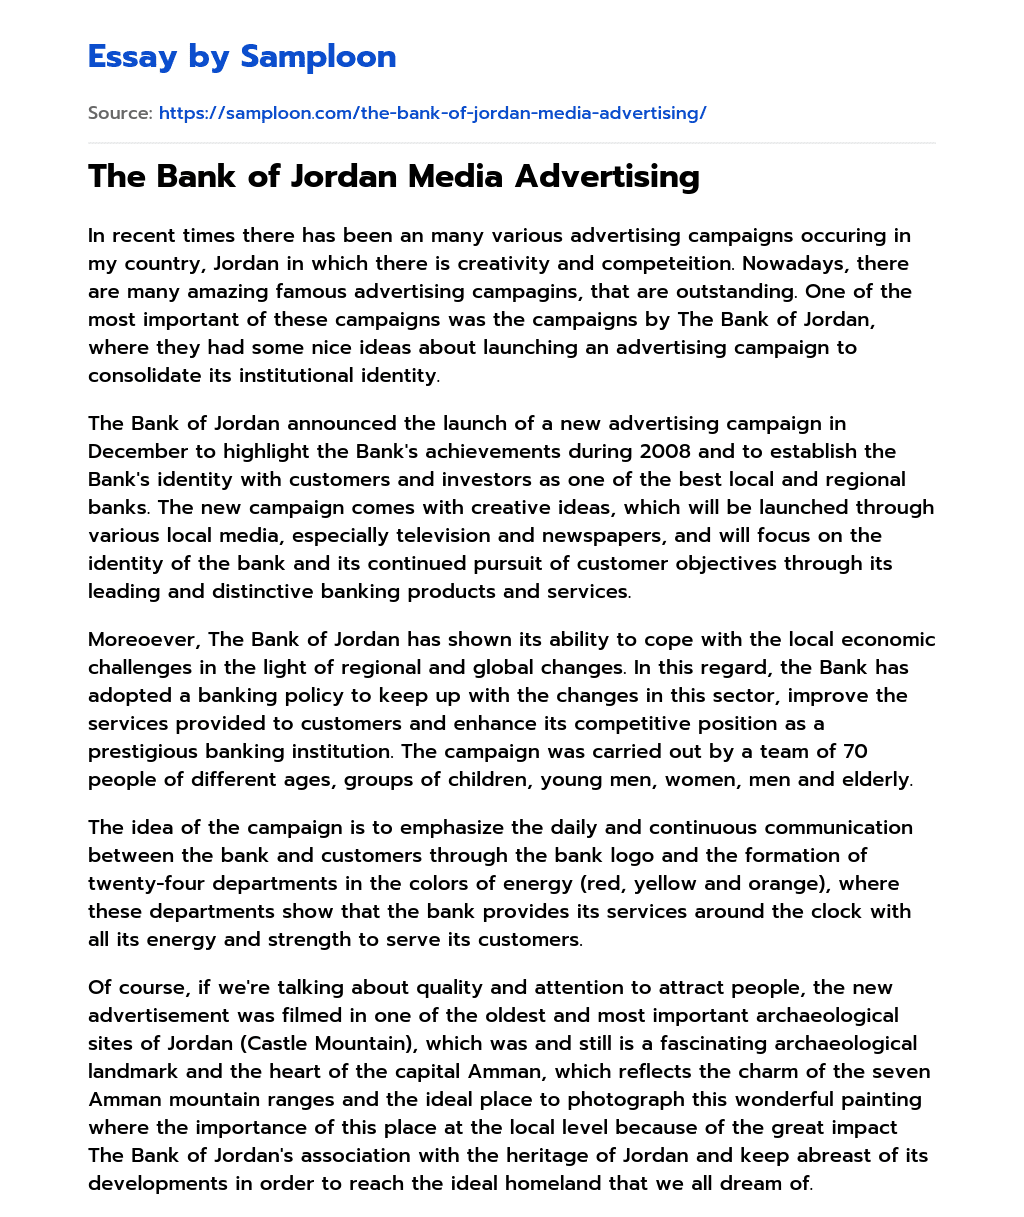 The Bank of Jordan Media Advertising essay